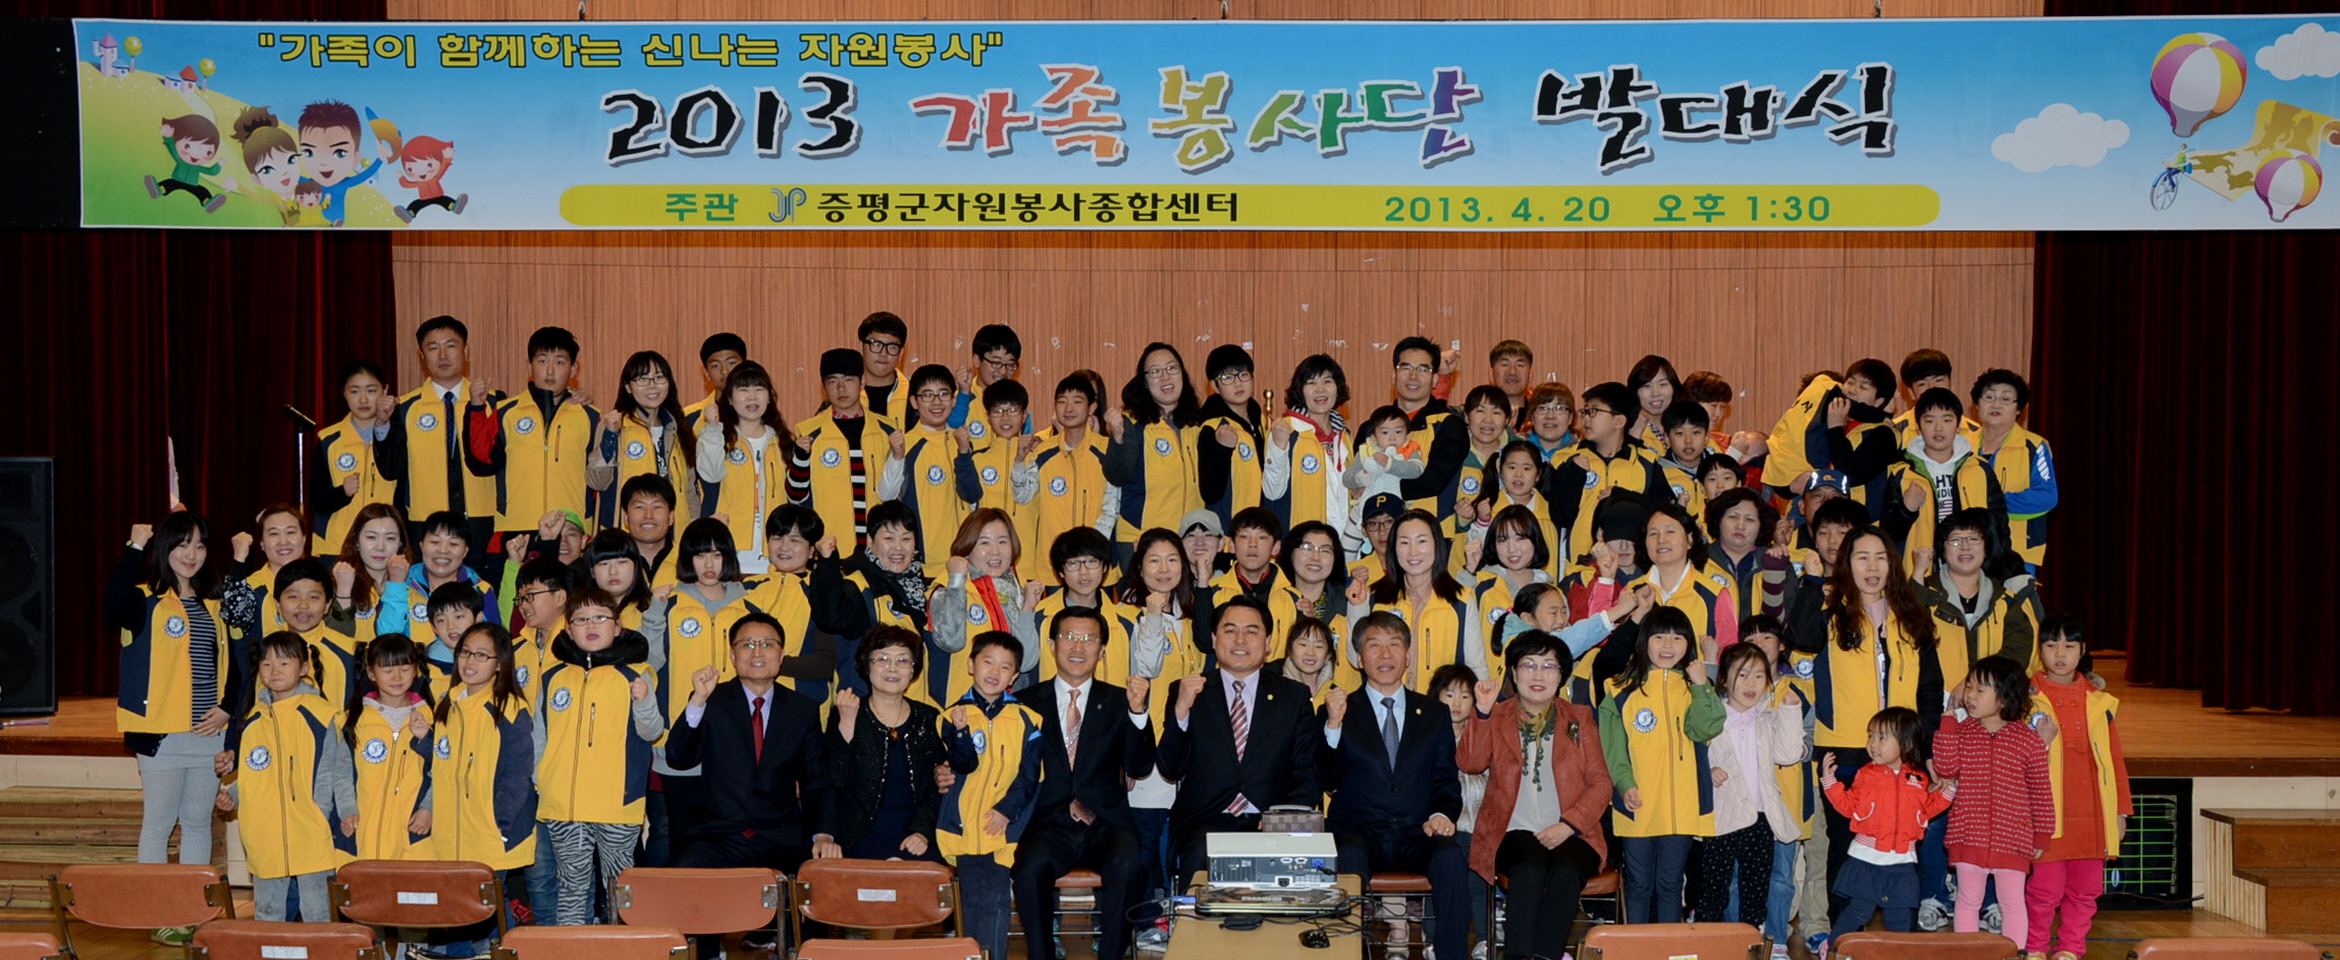 2013 가족봉사단 발대식 참석